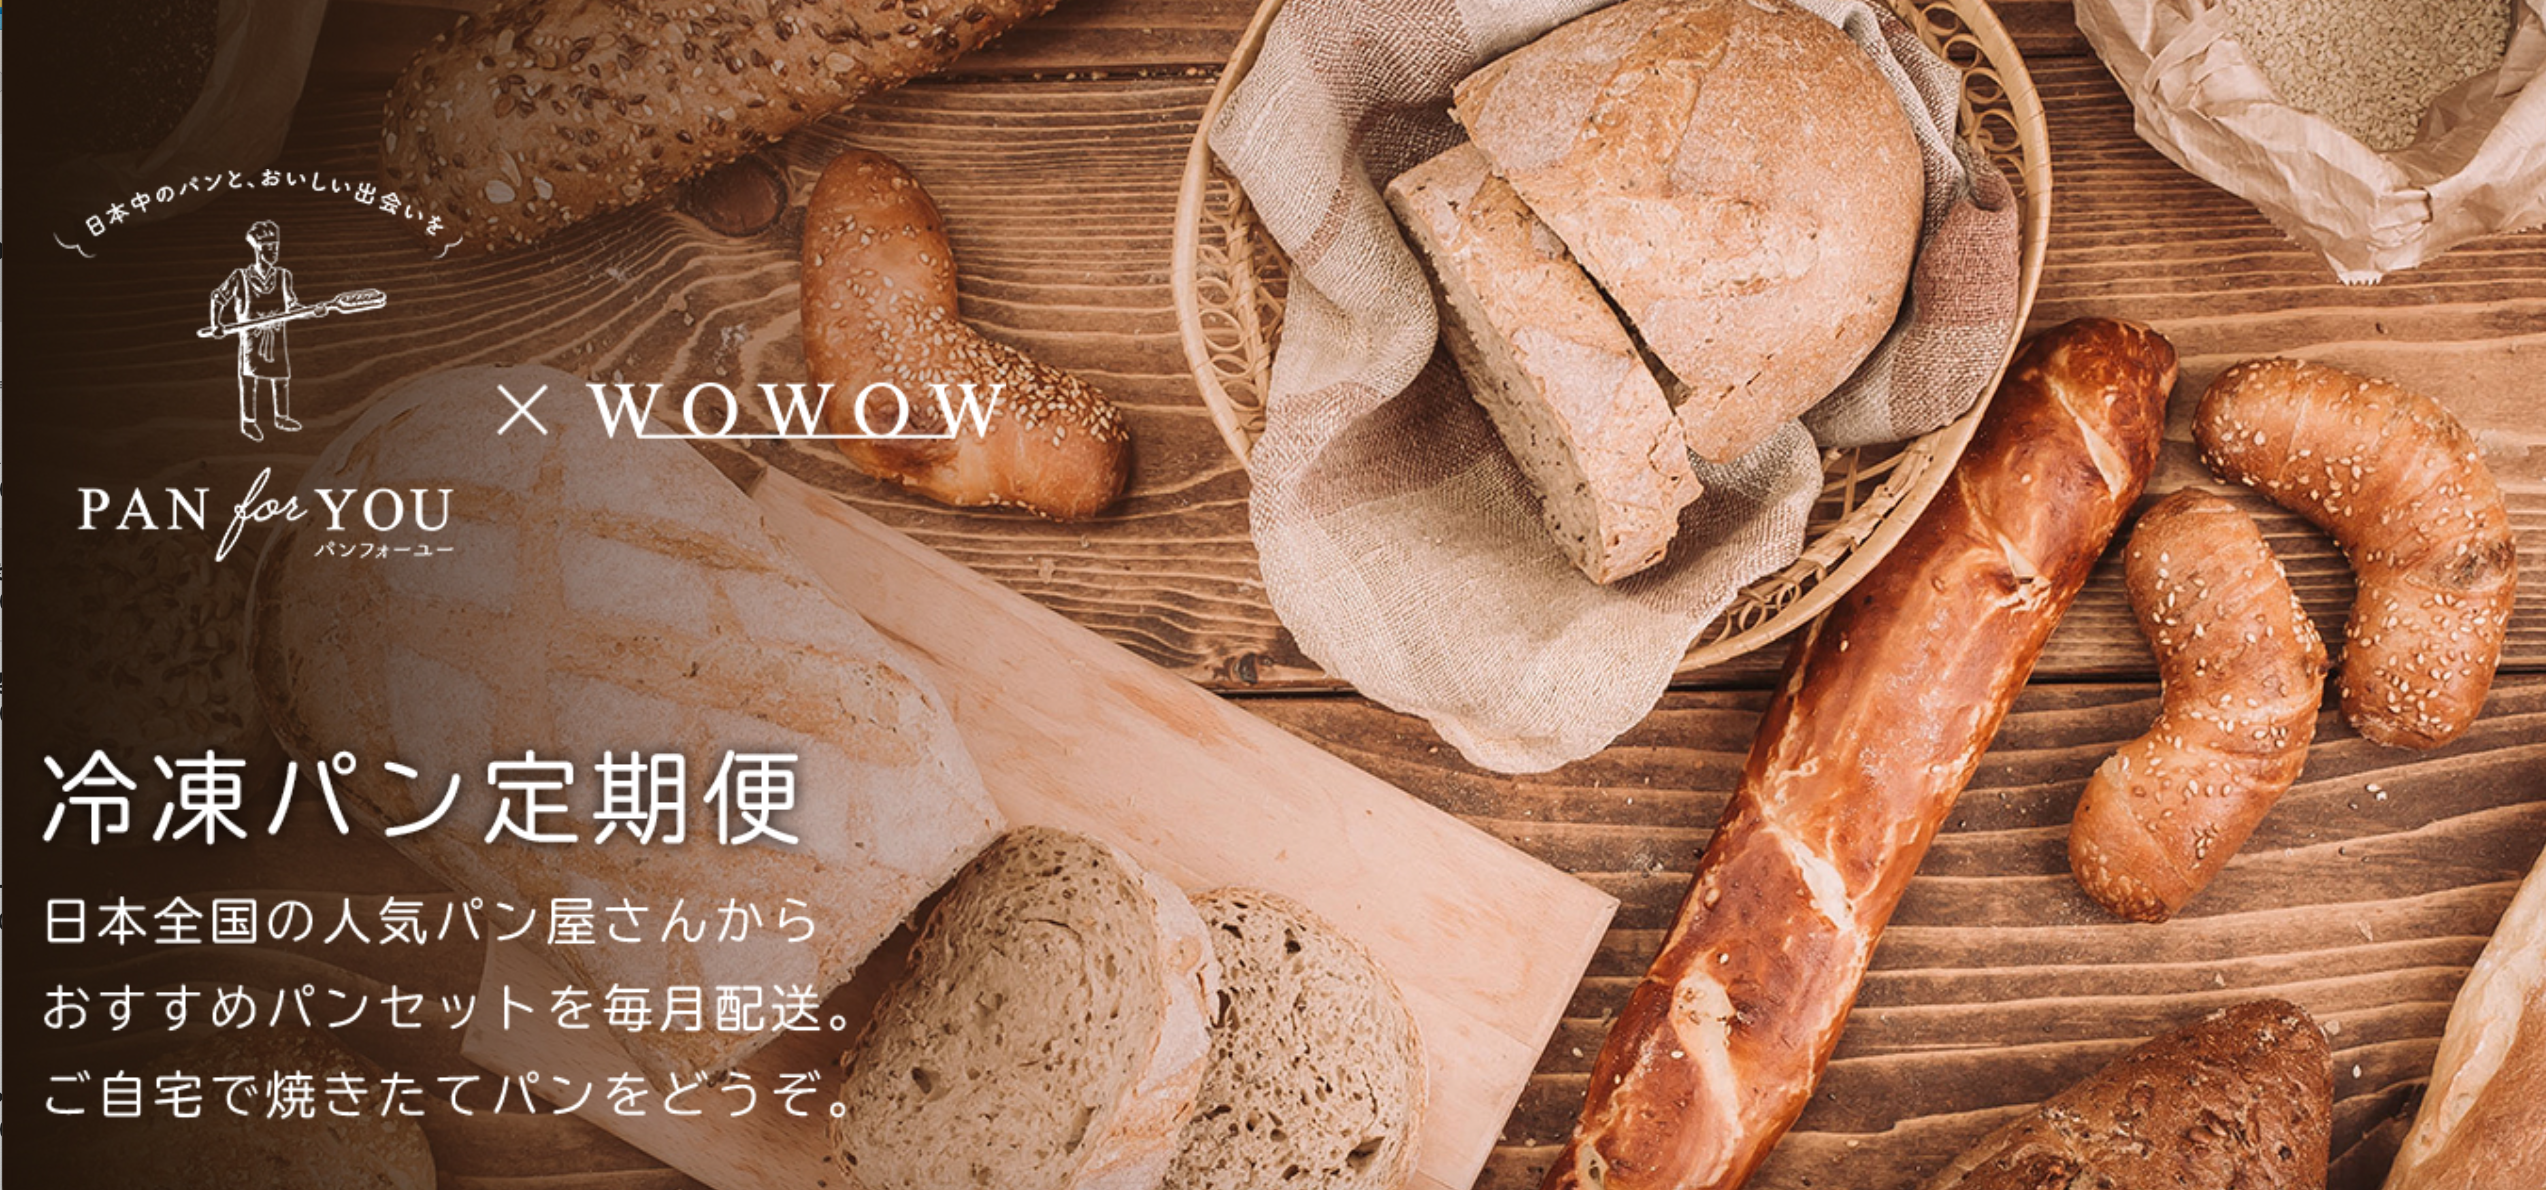 WOWSHOP冷凍パン